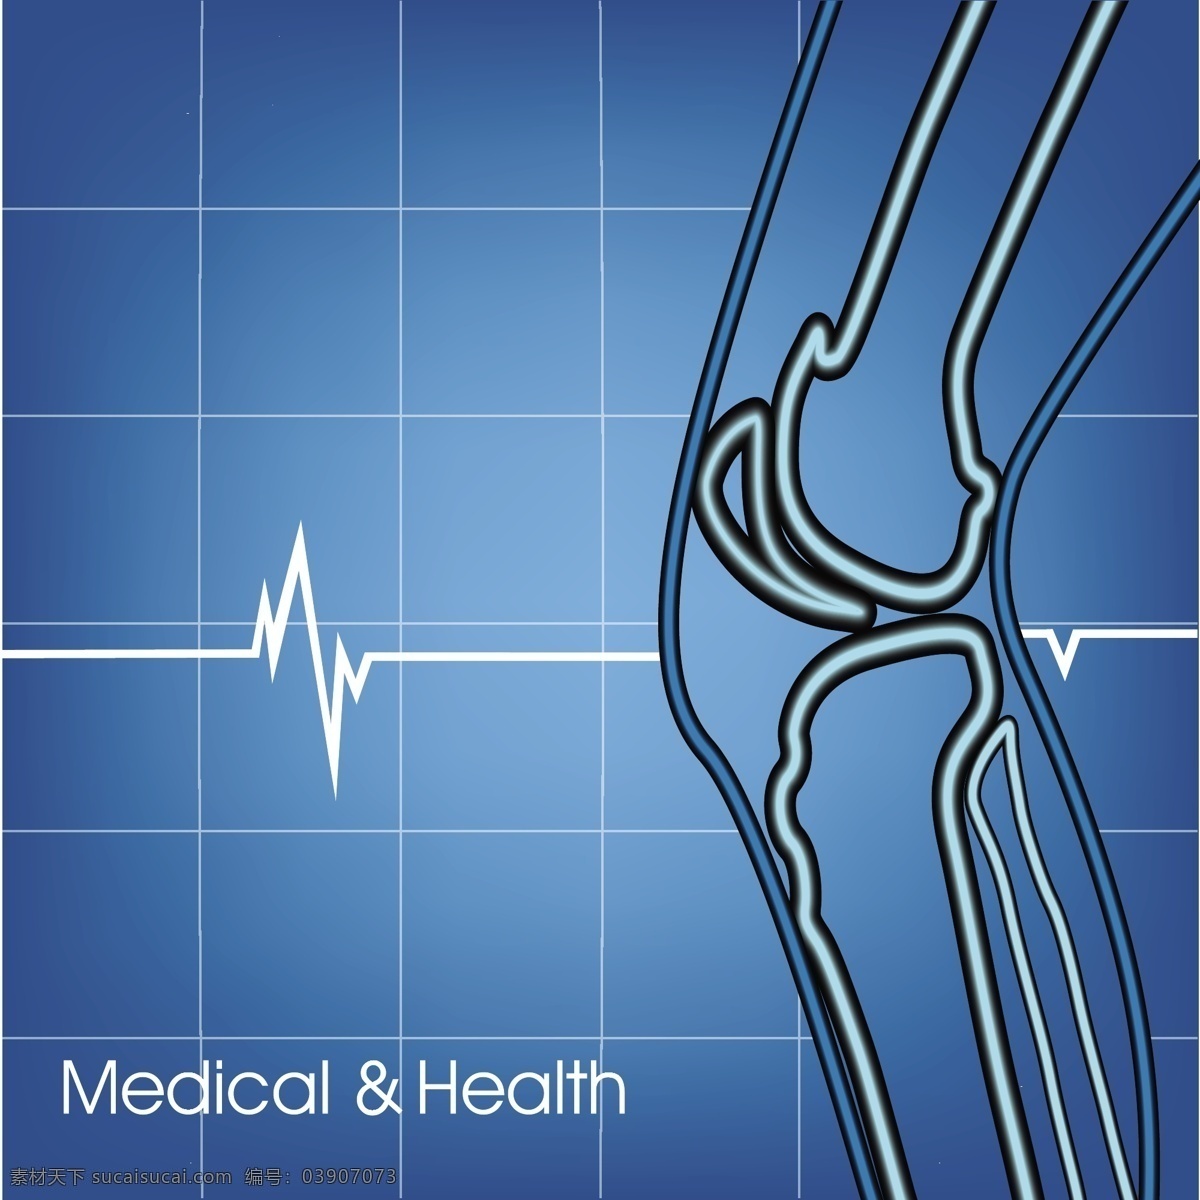 人体 骨骼 心电图 模板下载 膝盖 人体骨骼 医学 医疗 医疗保健 生活百科 行业标志 标志图标 矢量素材 蓝色